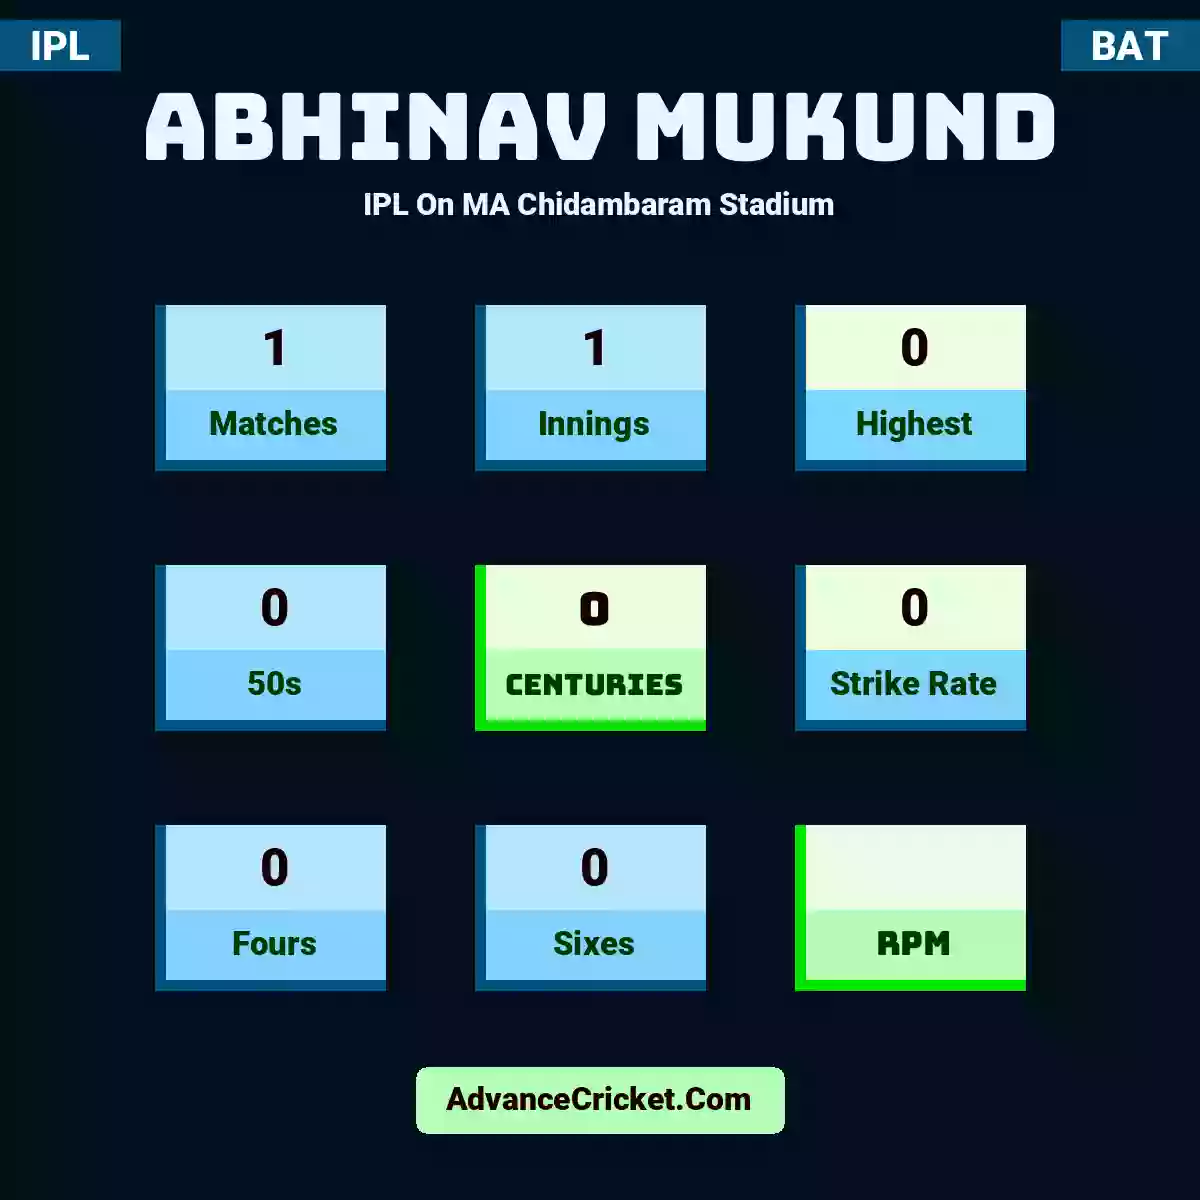 Abhinav Mukund IPL  On MA Chidambaram Stadium, Abhinav Mukund played 1 matches, scored 0 runs as highest, 0 half-centuries, and 0 centuries, with a strike rate of 0. A.Mukund hit 0 fours and 0 sixes.